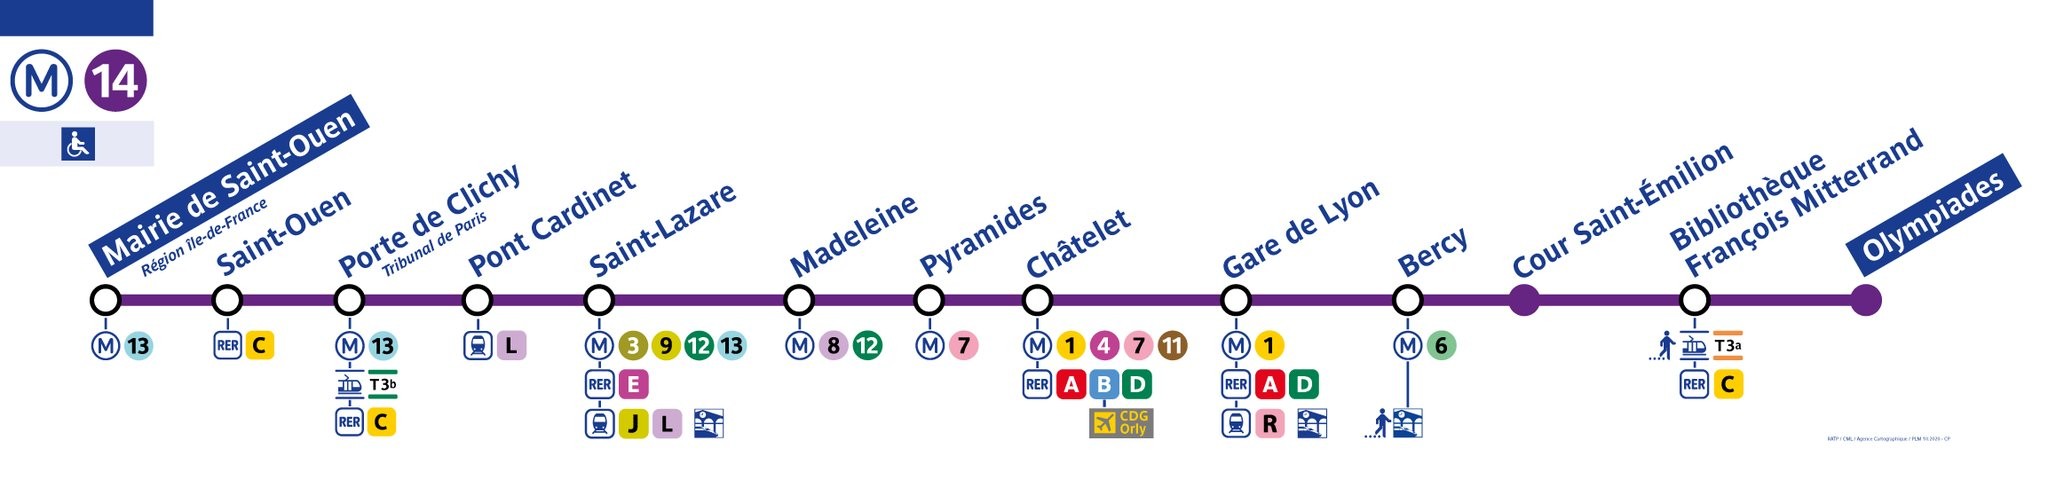 Les stations de la ligne-14 en dcembre 2020.